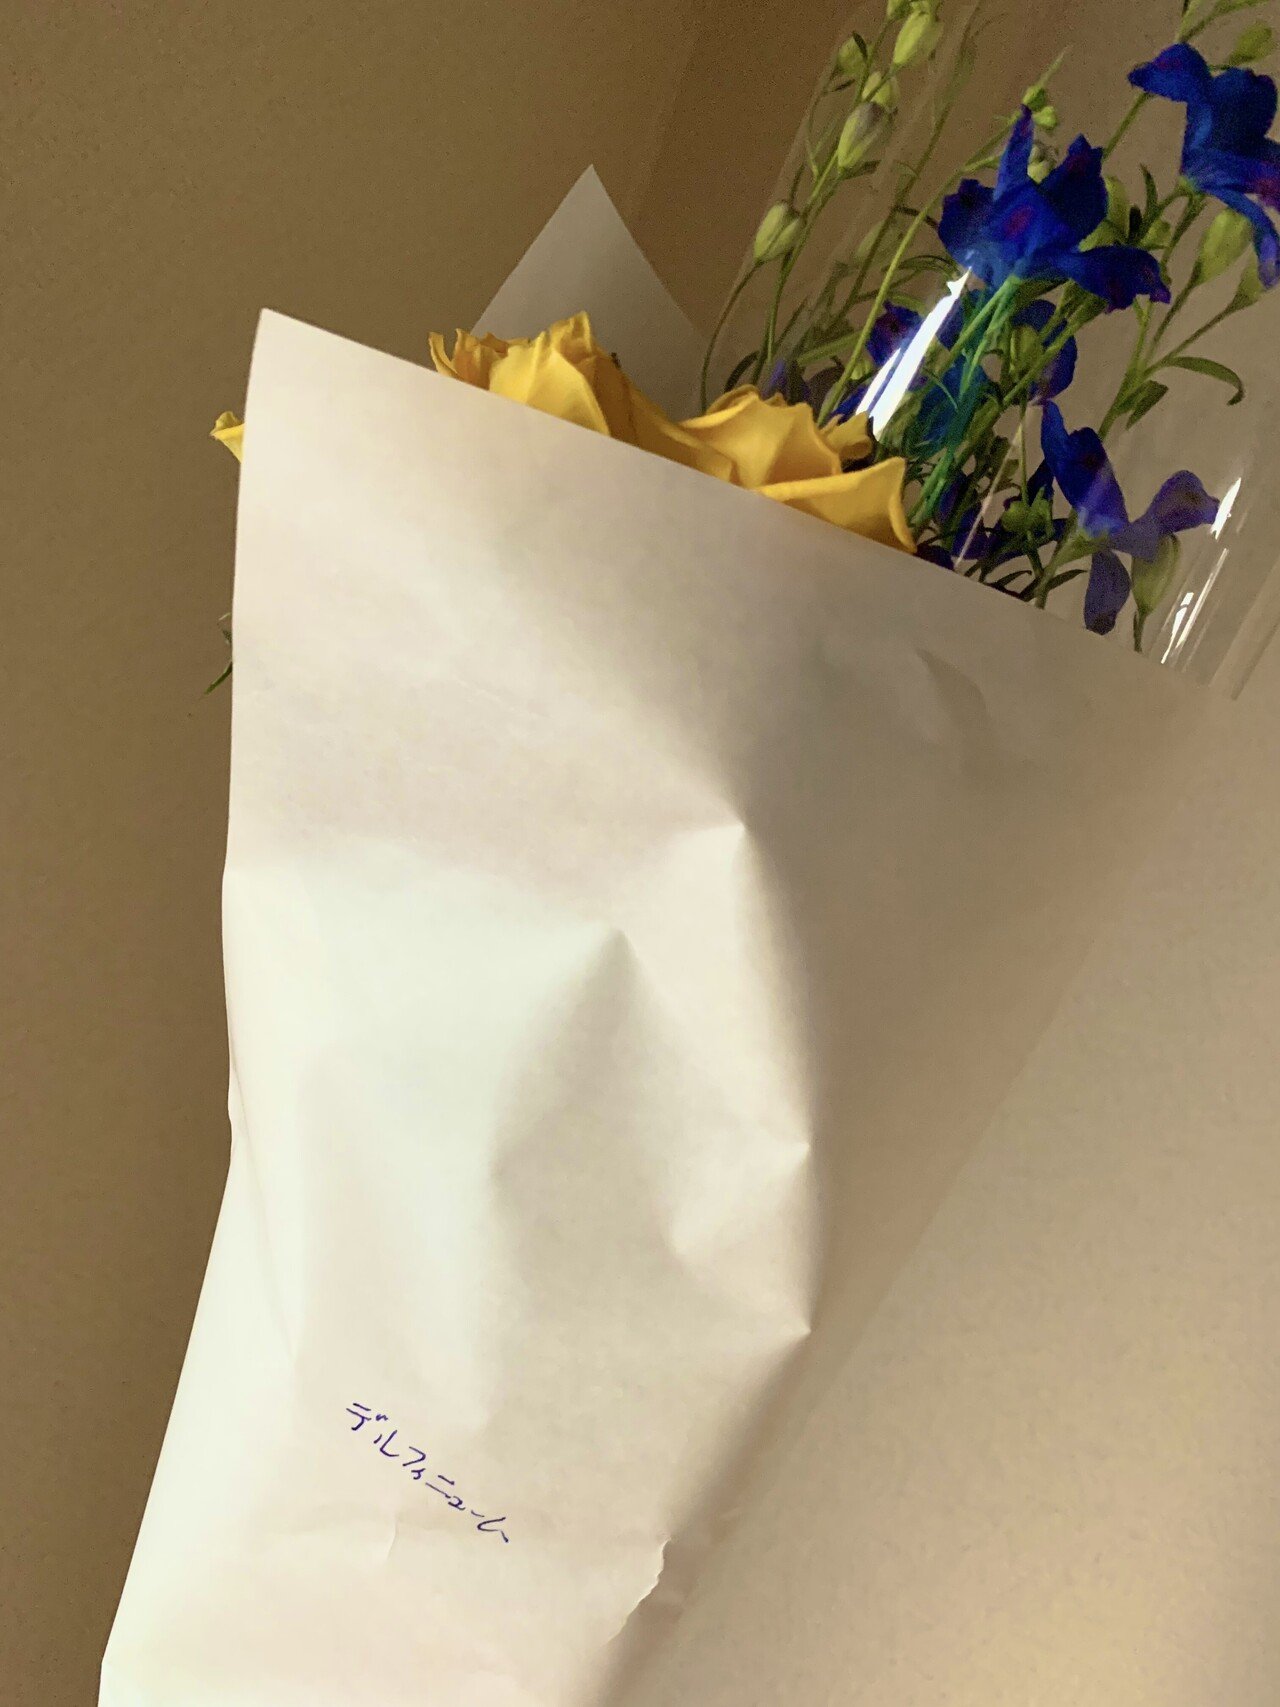 近所のお花屋さんにて お花の名前を訊ねたら 手書き入りで教えていただきました デルフィニウム なんて美しい 黄色のバラと共に 我が家にお持ち帰り 幸福の花束です お花屋さんありがとう 岩間さゆり Note